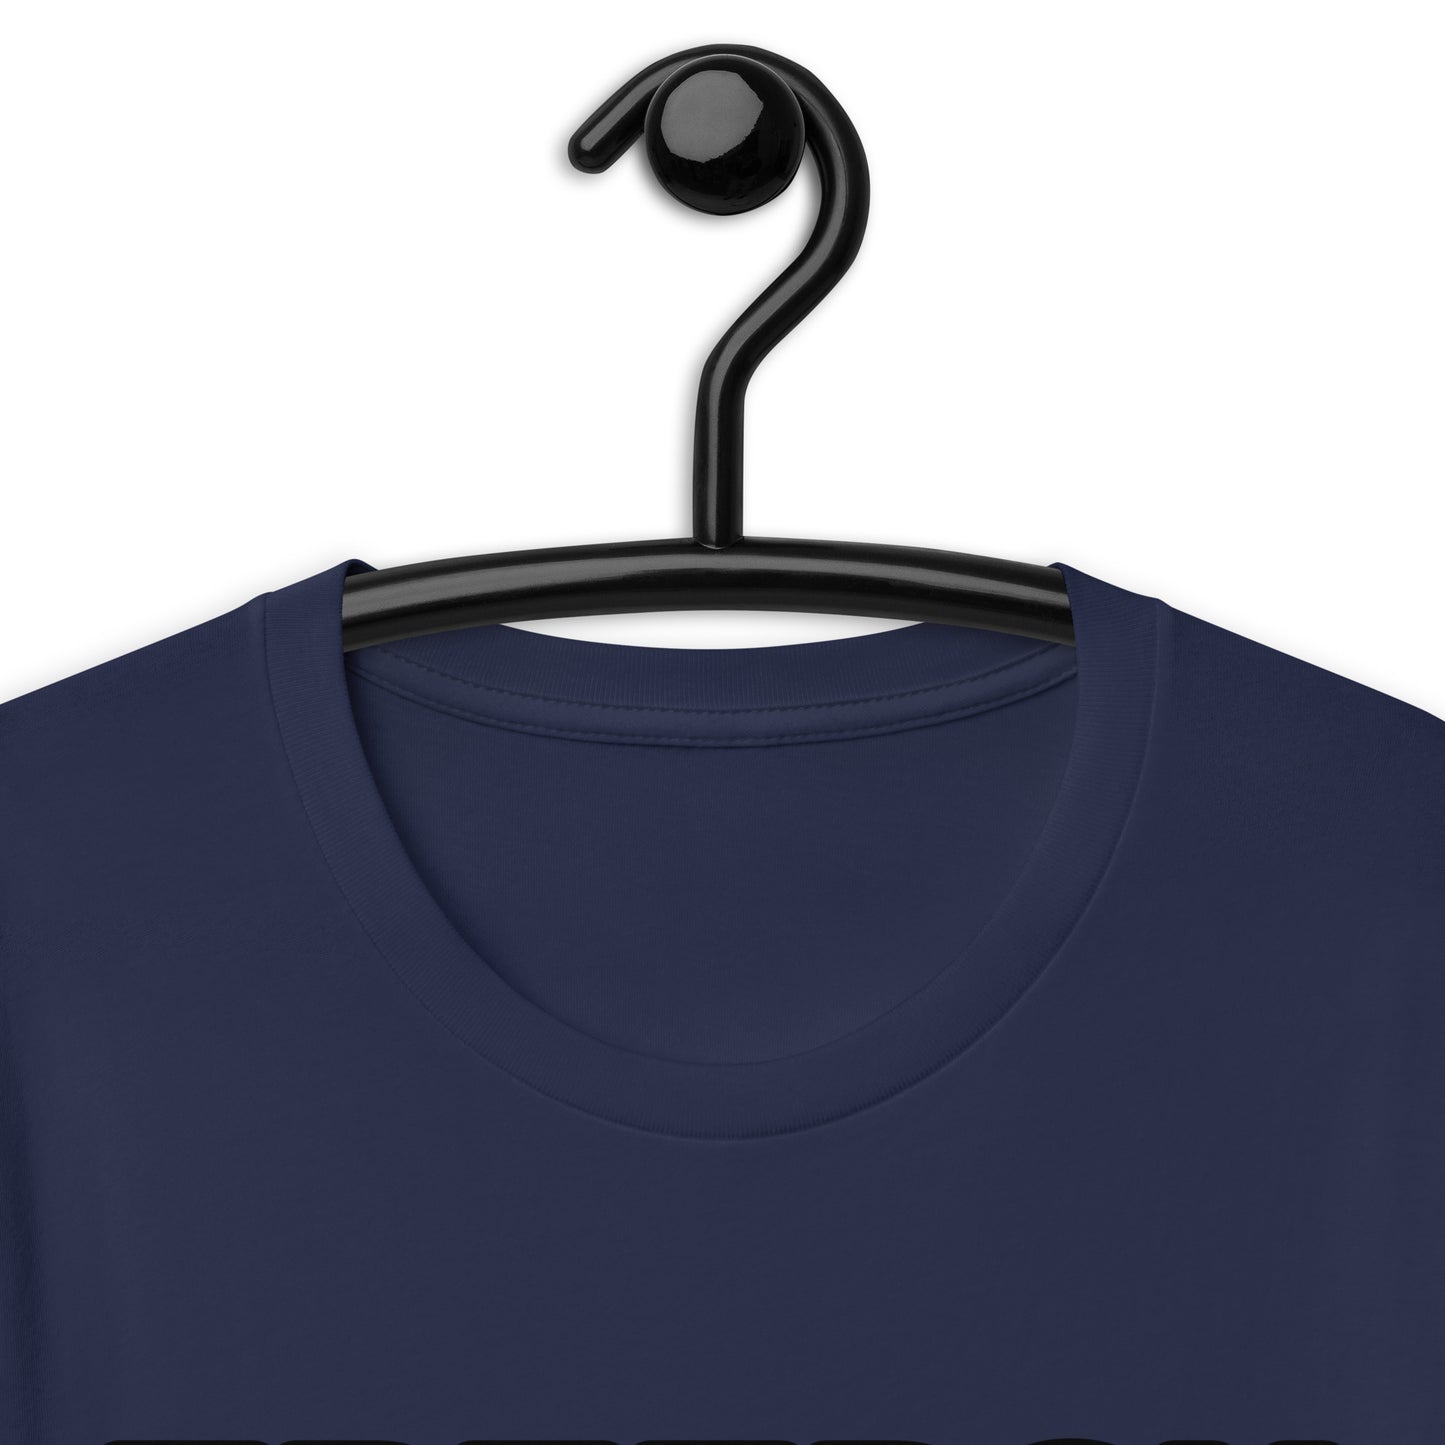 FREEDOM (Unisex t-shirt)